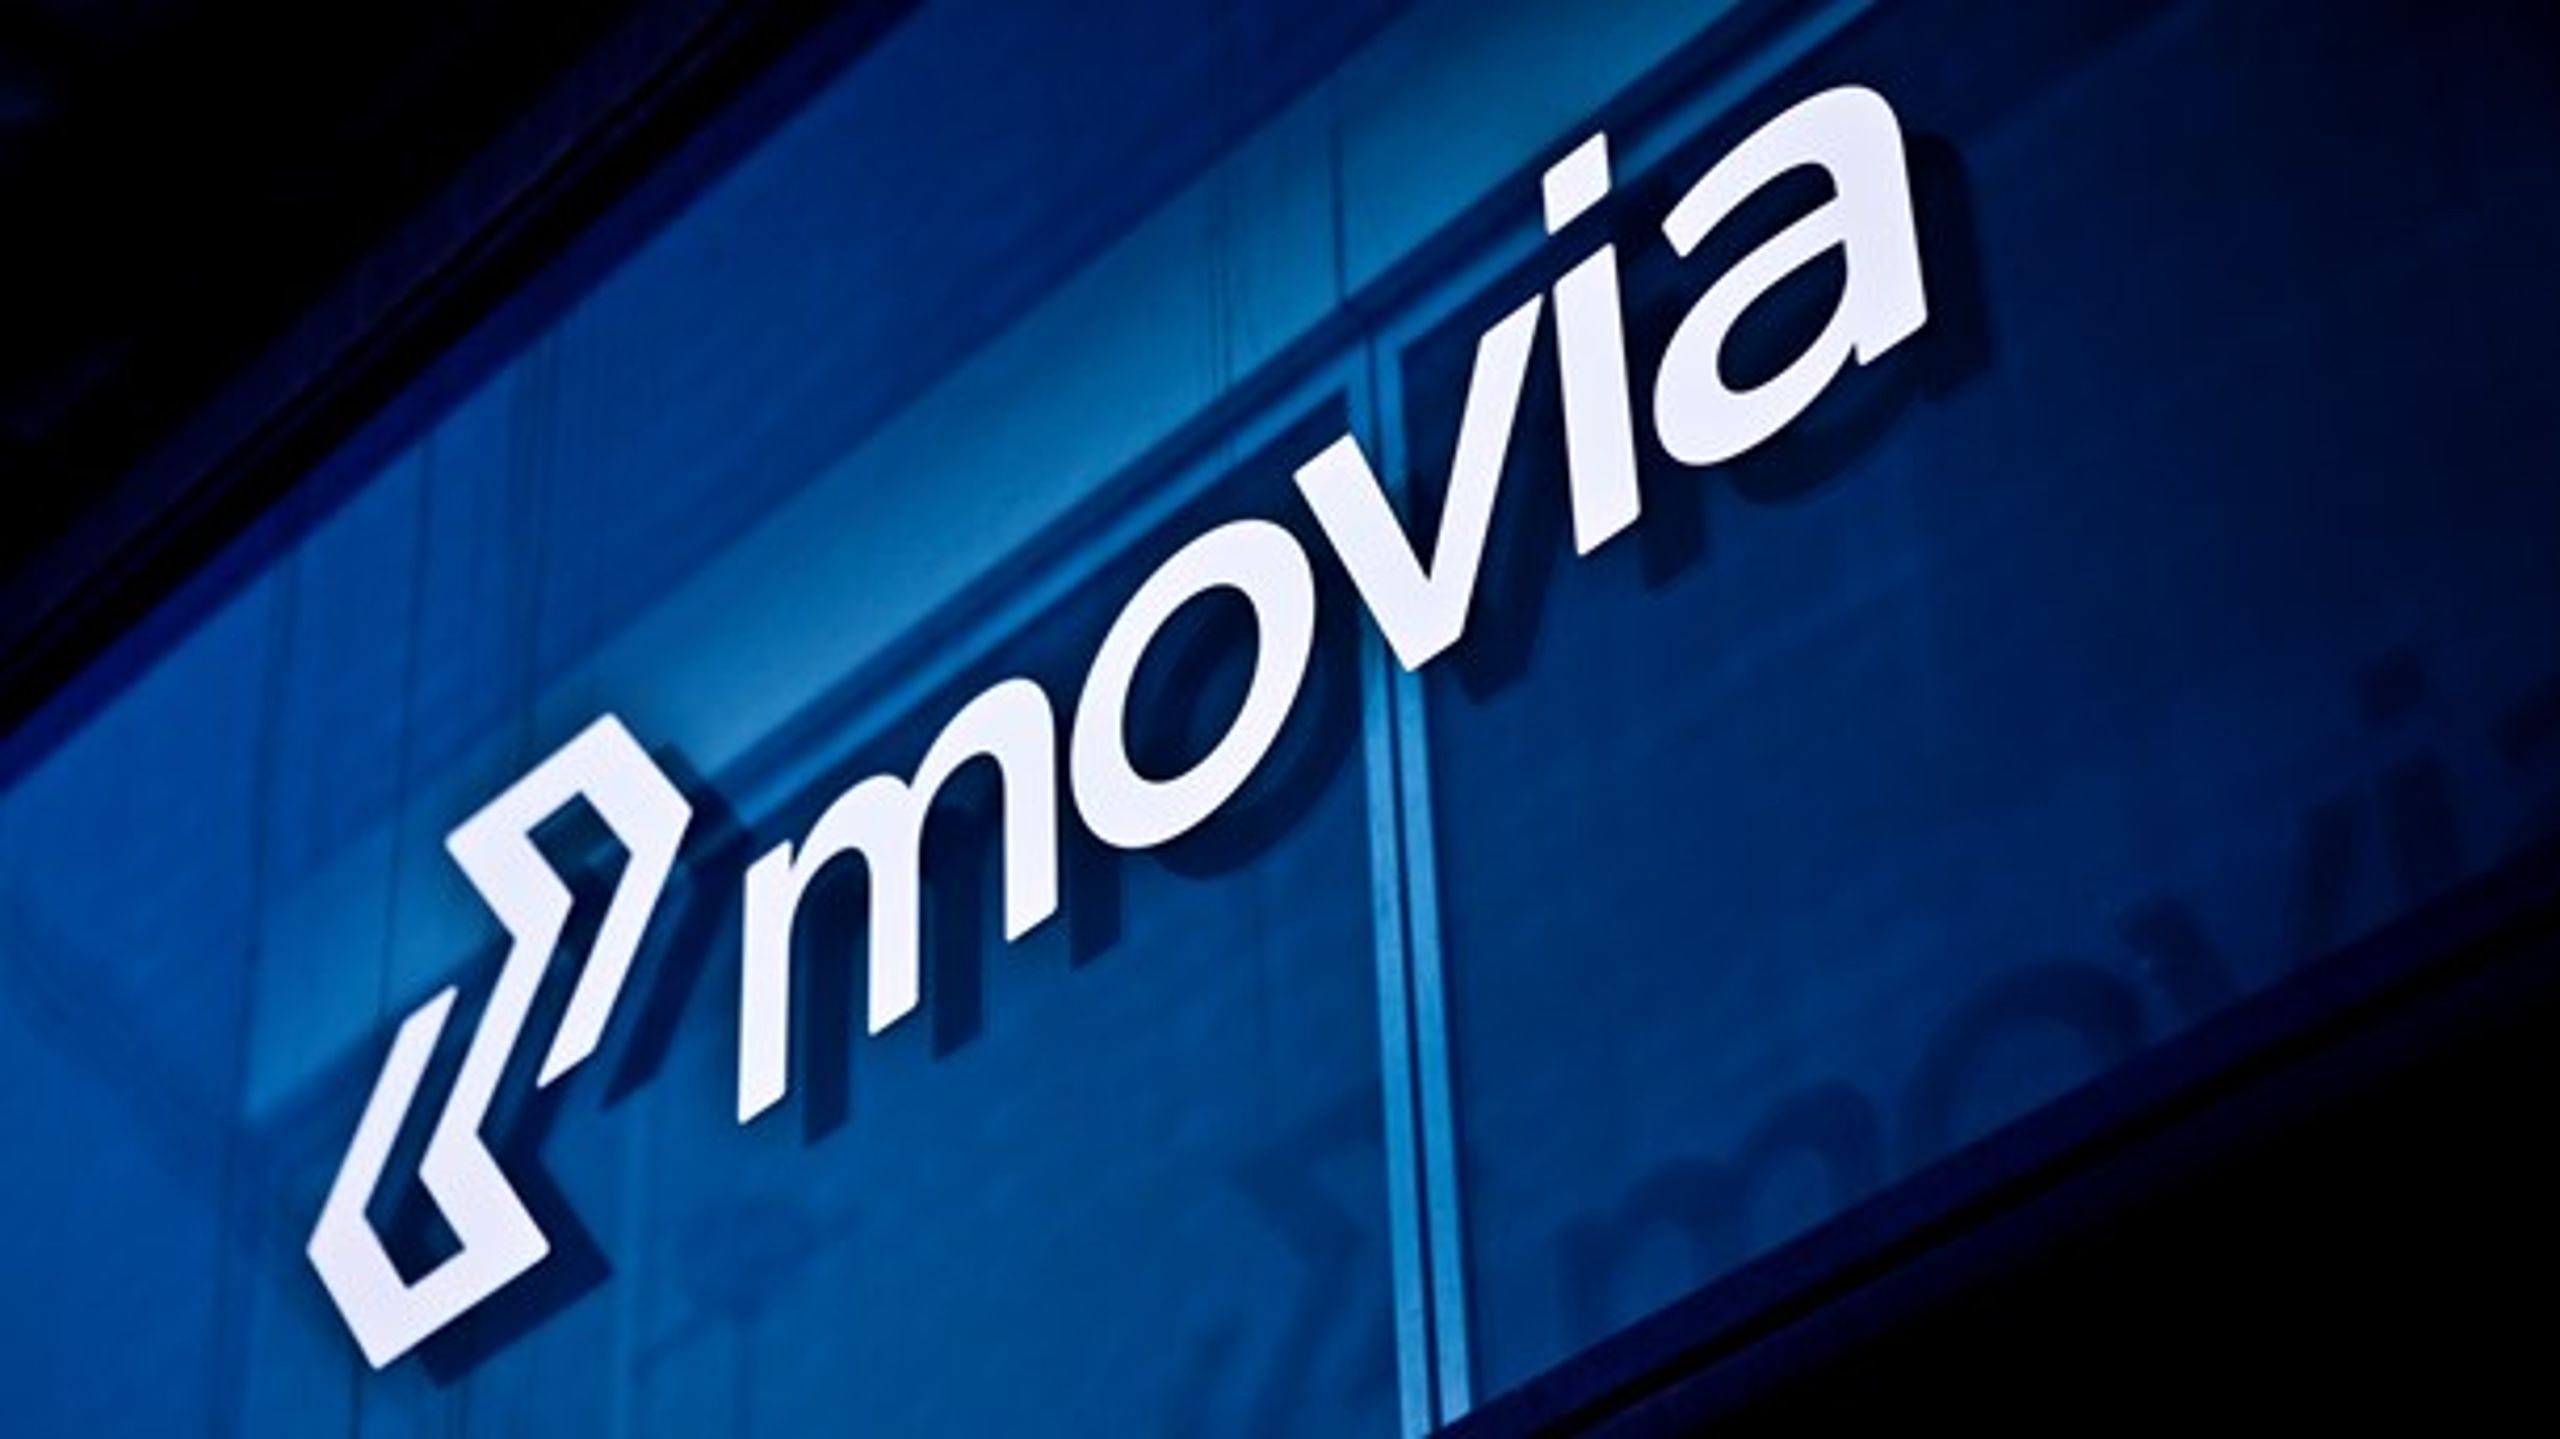 Movia, der er ejet af Sjællands 45 kommuner og to regioner,&nbsp;kører årligt med cirka 200 millioner kunder i busser, lokaltog og flextrafik.